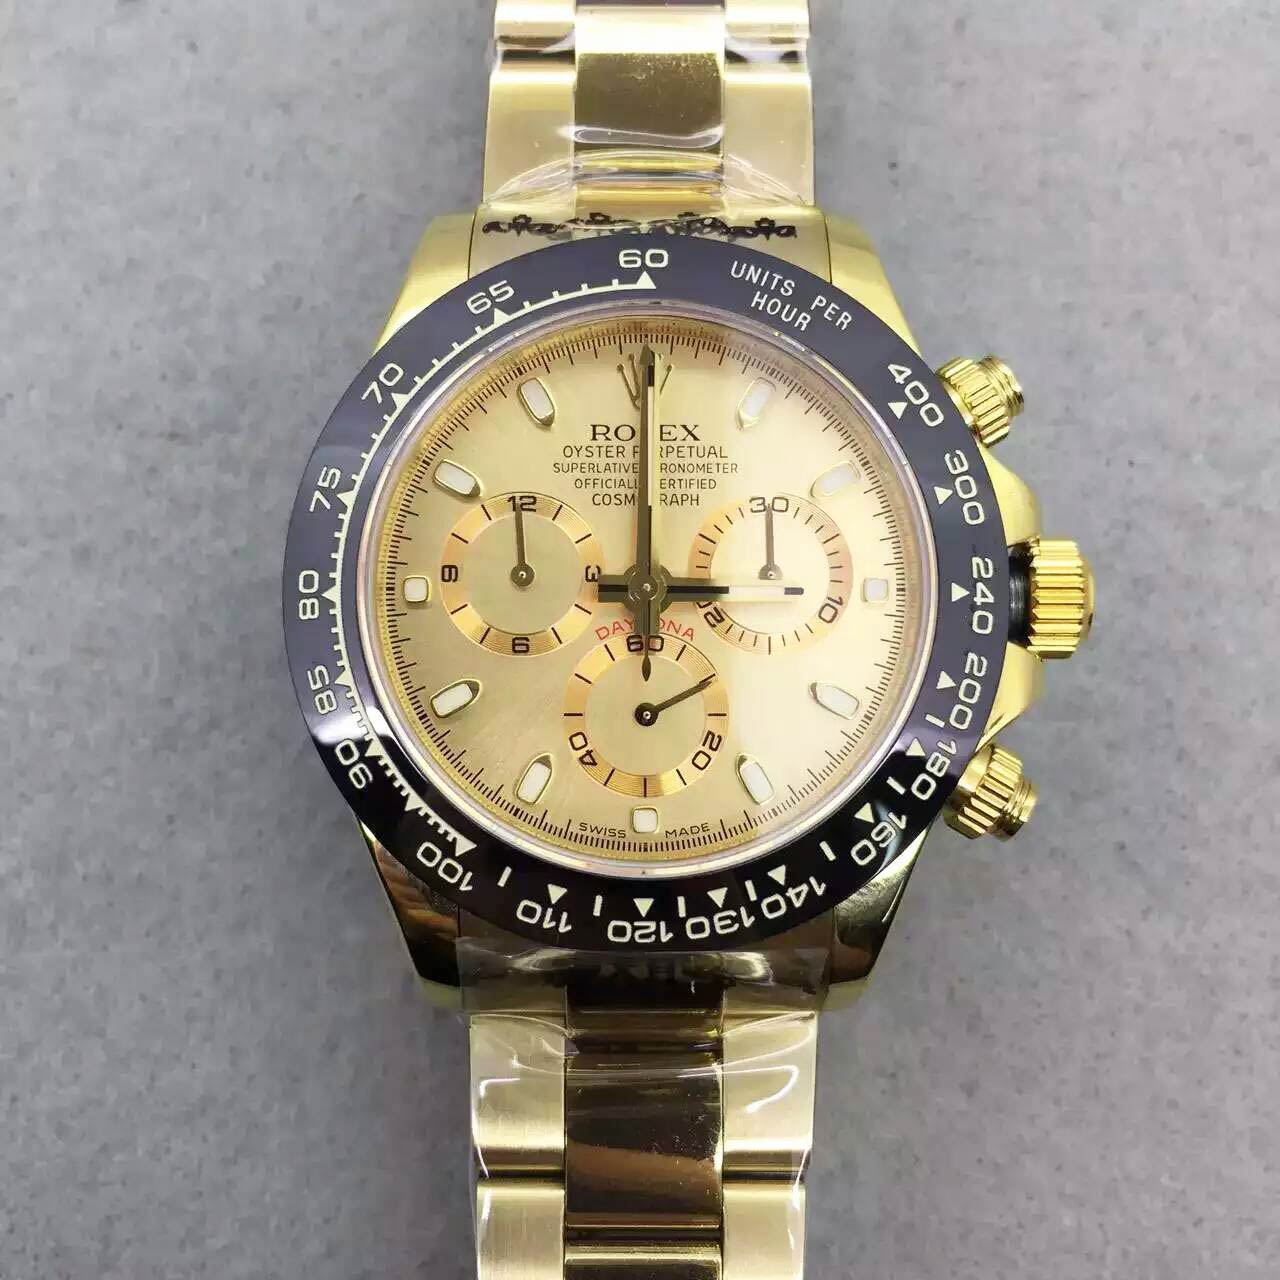 3A勞力士 Rolex DAYTONA 迪通拿陶瓷圈搭載7750機芯 鋼帶款 熱門腕錶 推薦